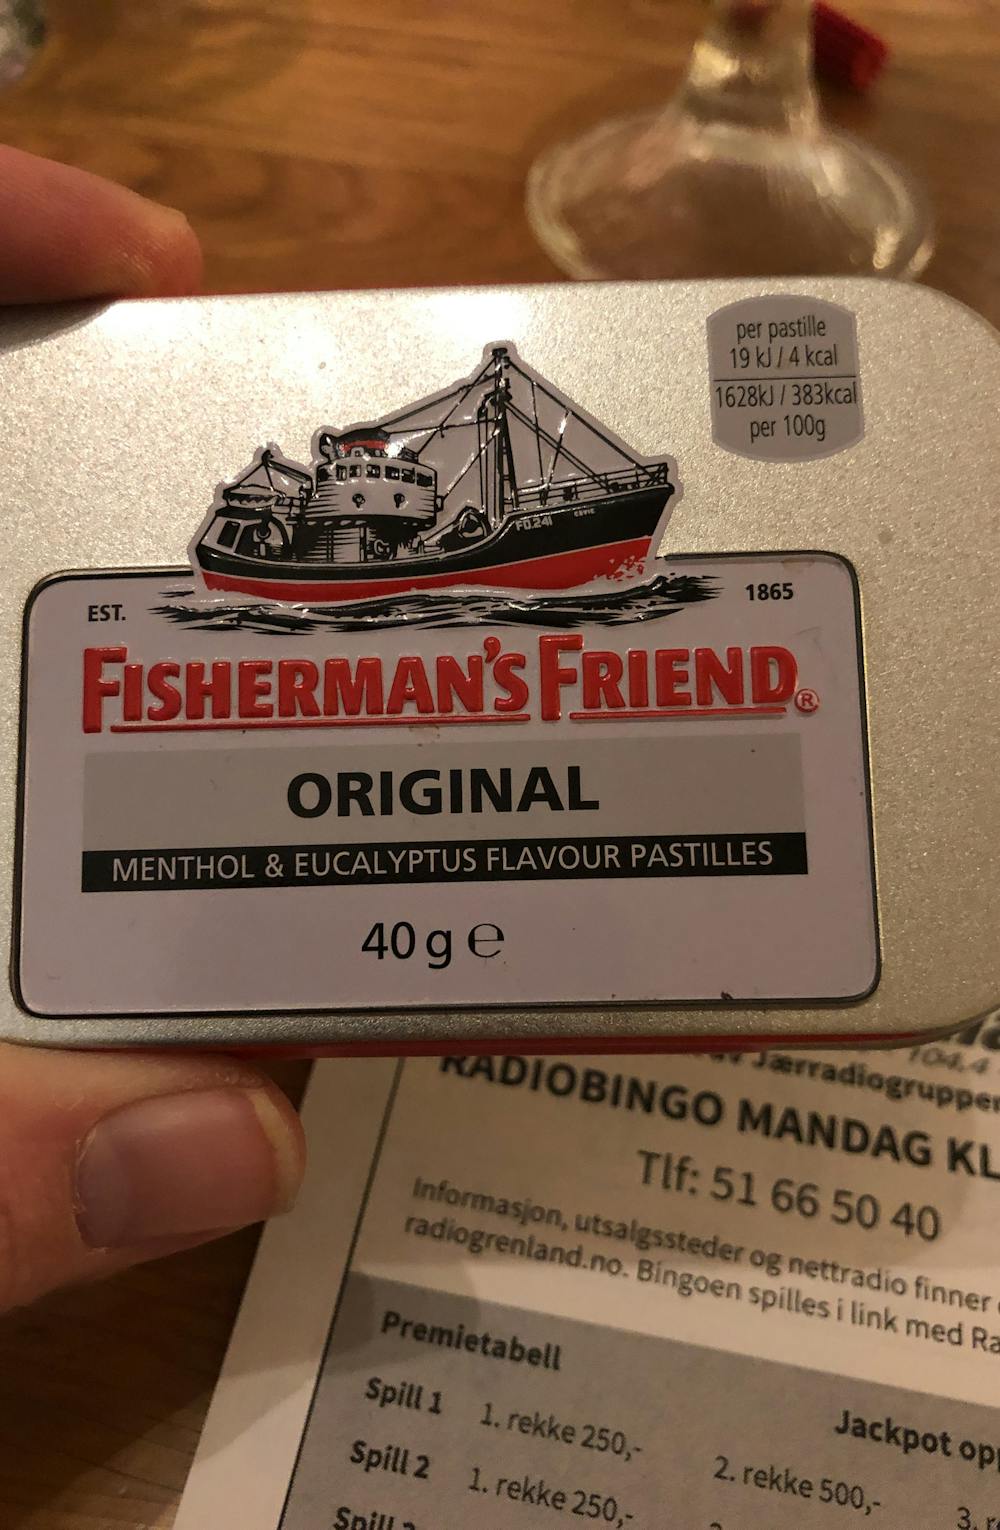 Fisherman's friend original, Fisherman's friend